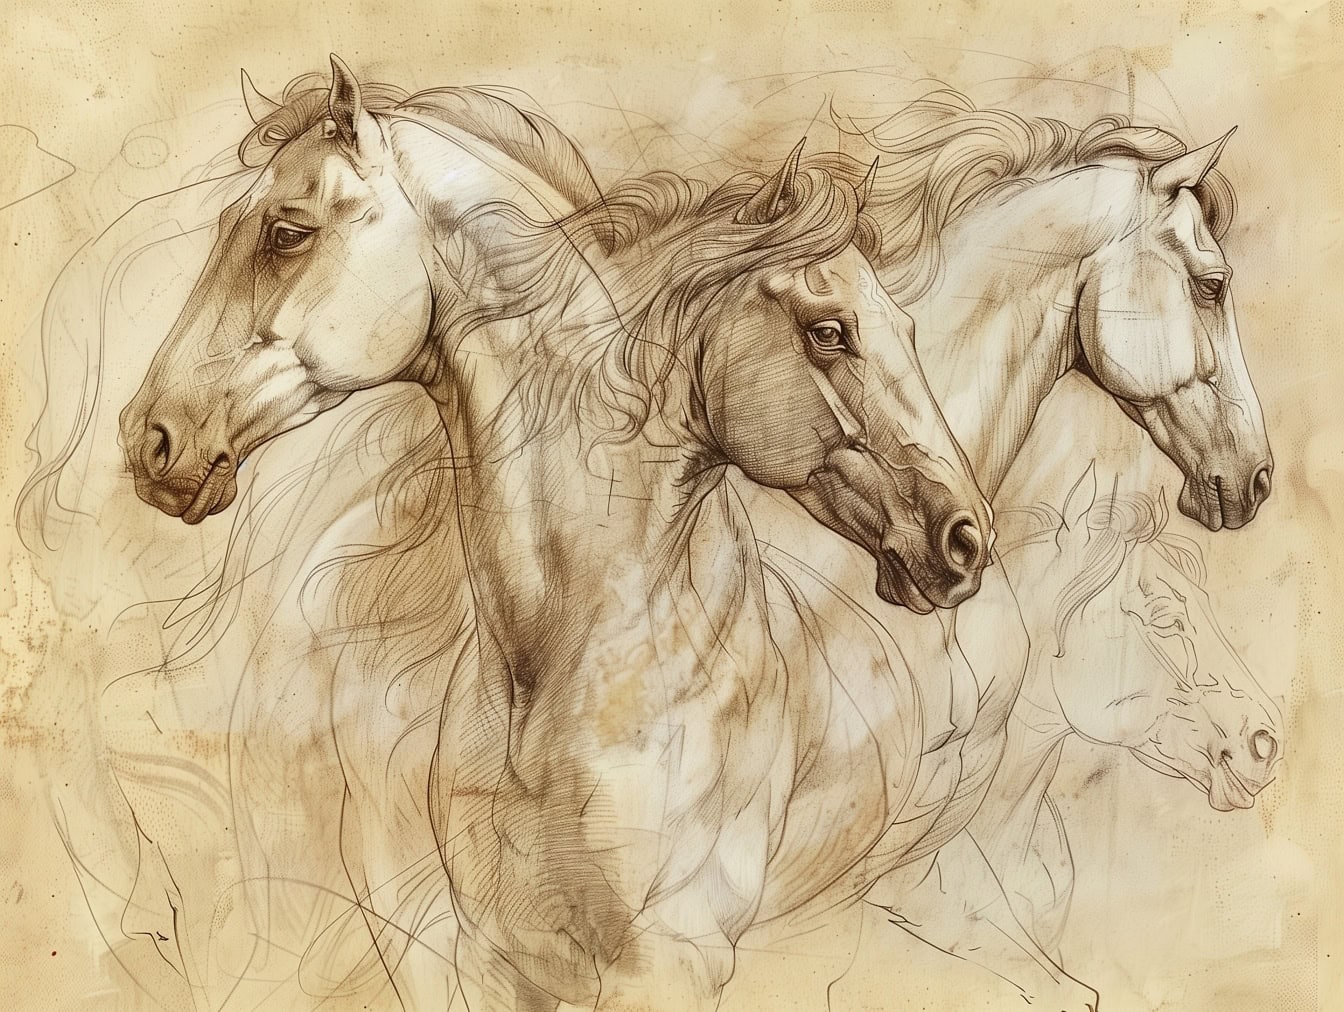 En uferdig arbeidsskisse tegning av flere hester på falmet gulbrunt papir, som minner om kunstverket til en middelalderkunstner